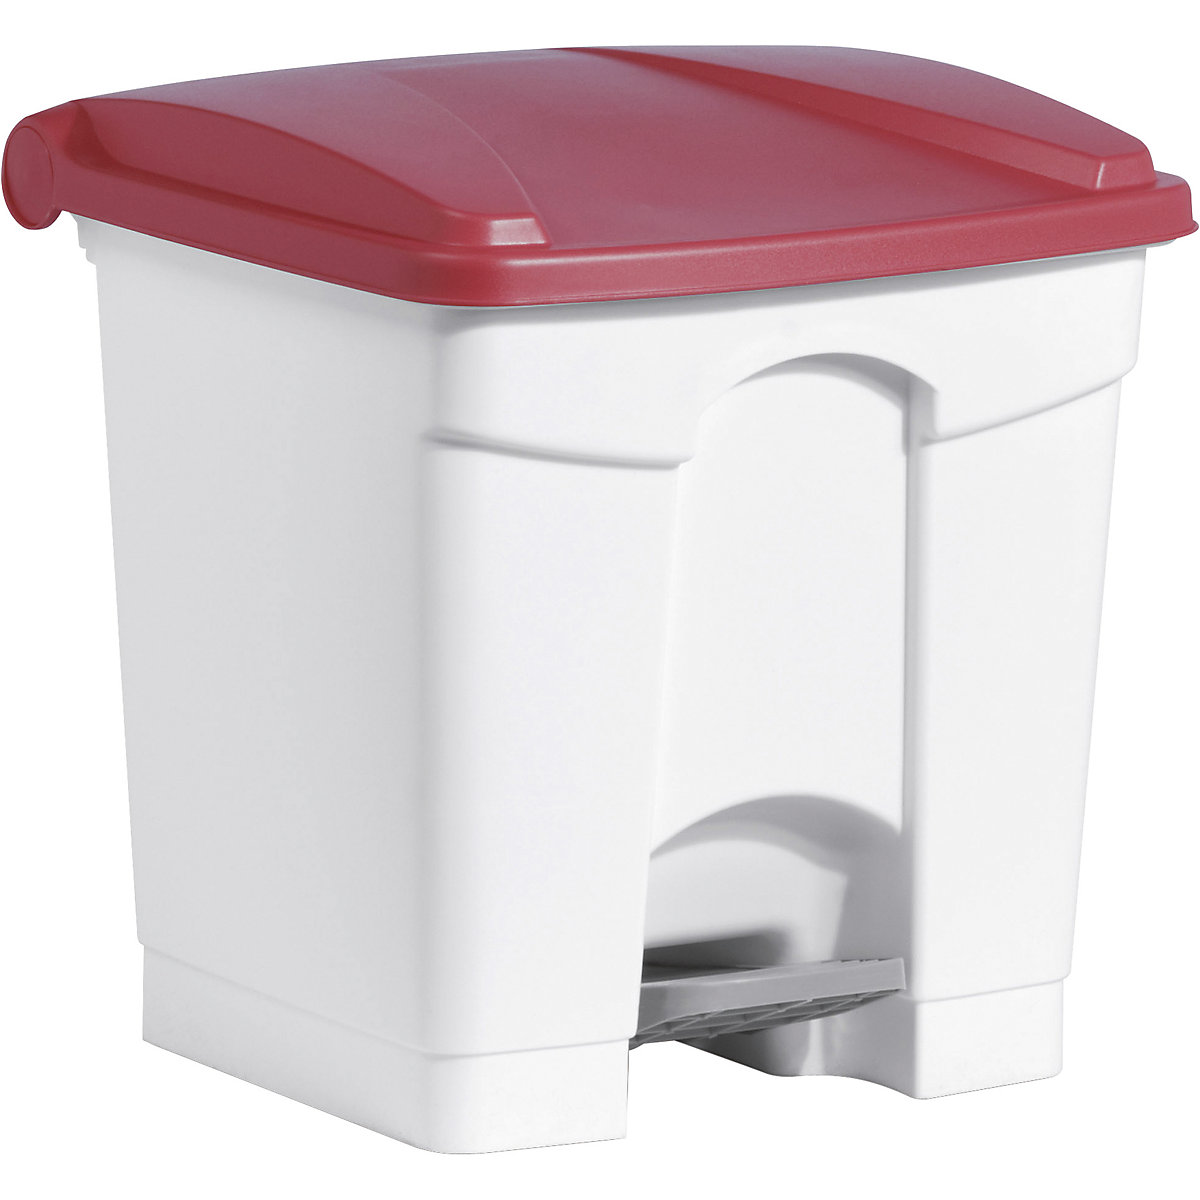 Nášlapná nádoba na odpad – helit, objem 30 l, š x v x h 410 x 440 x 400 mm, bílá, červené víko-6